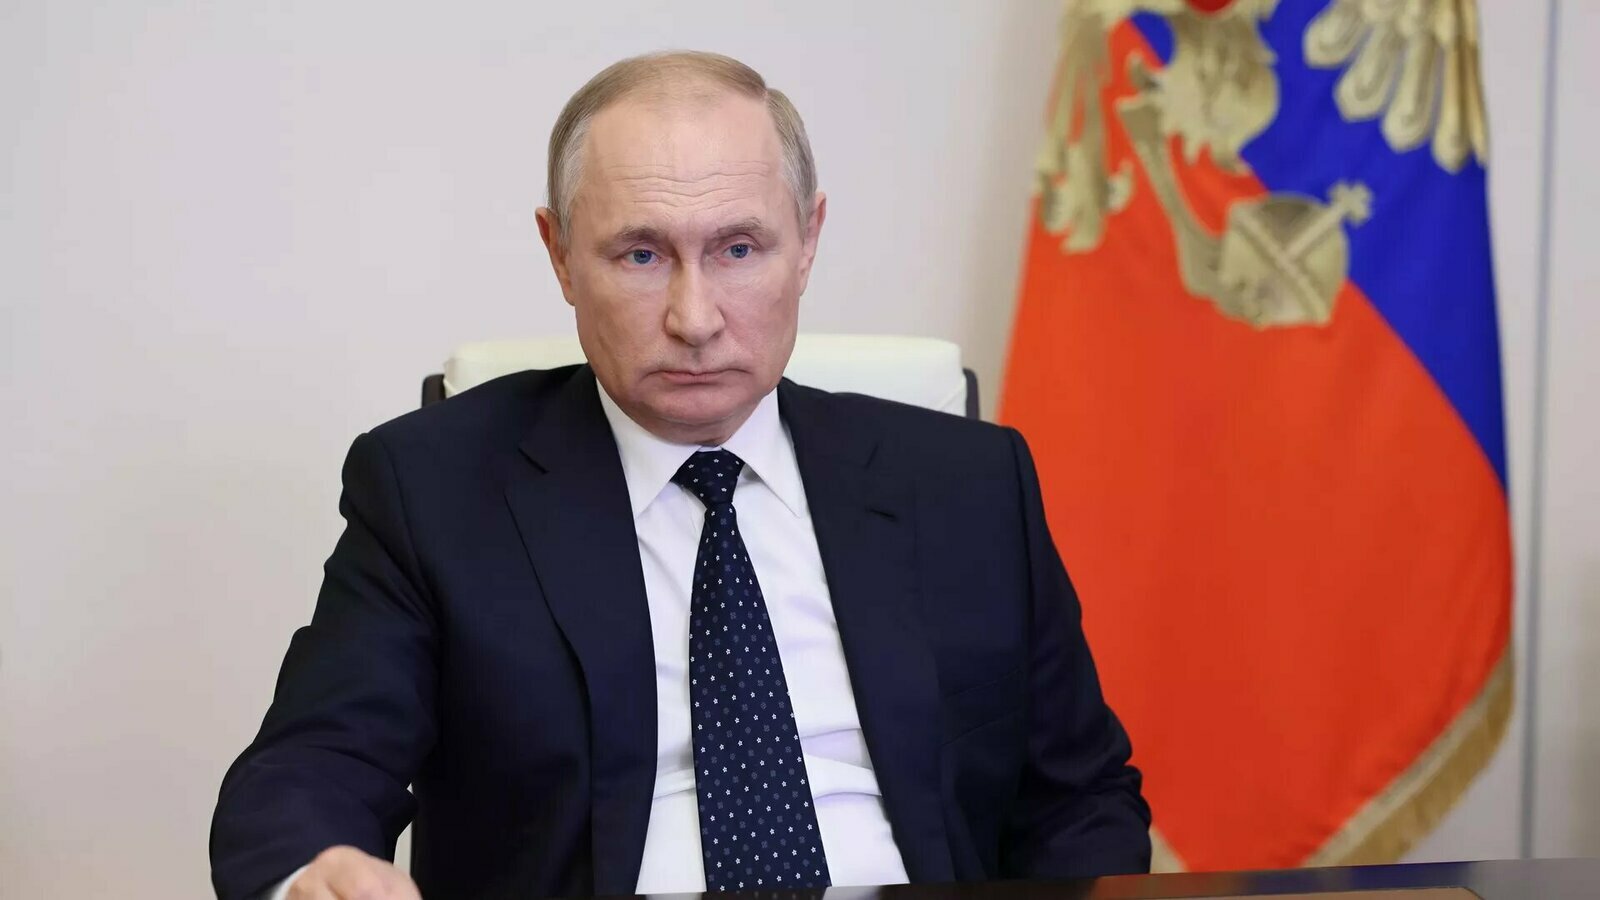 Россия выступает за взаимовыгодное партнерство, заявил Путин